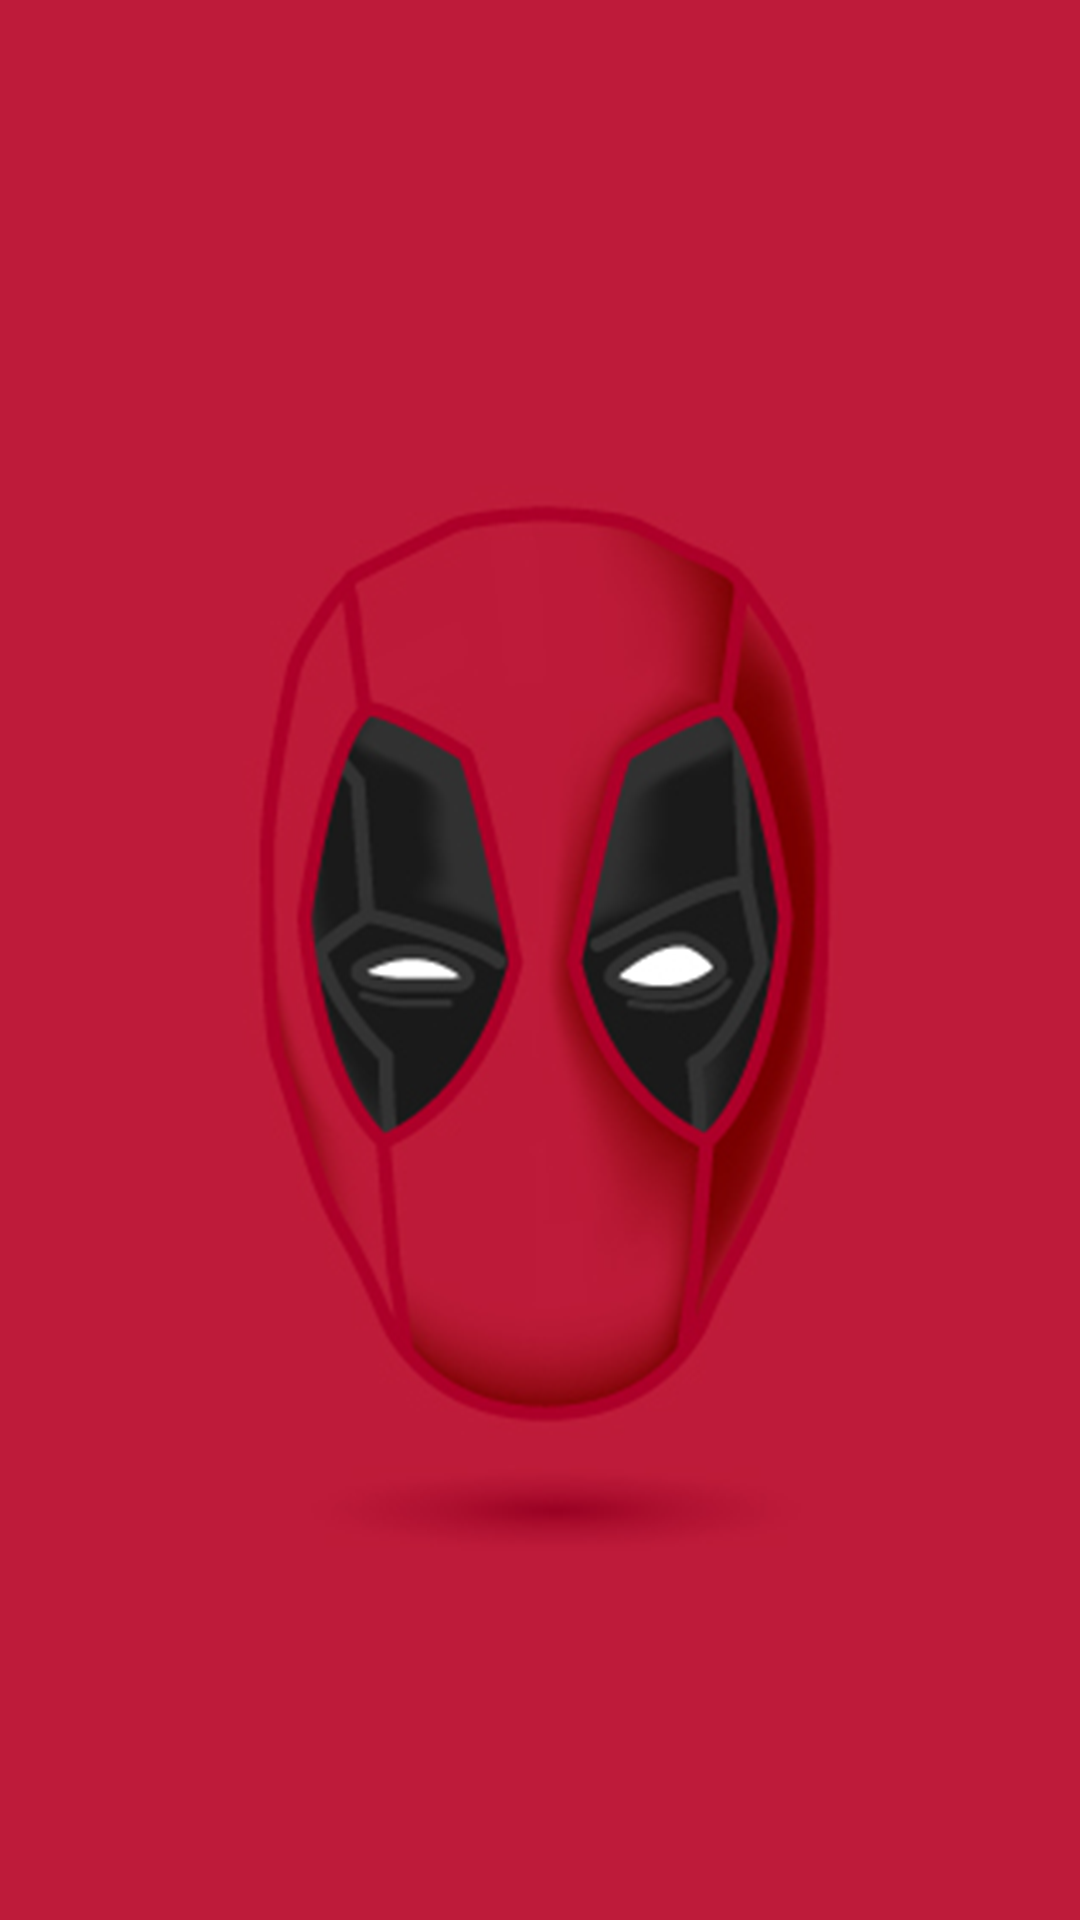 General 1080x1920 simple background antiheroes Deadpool minimalism red background artwork superhero